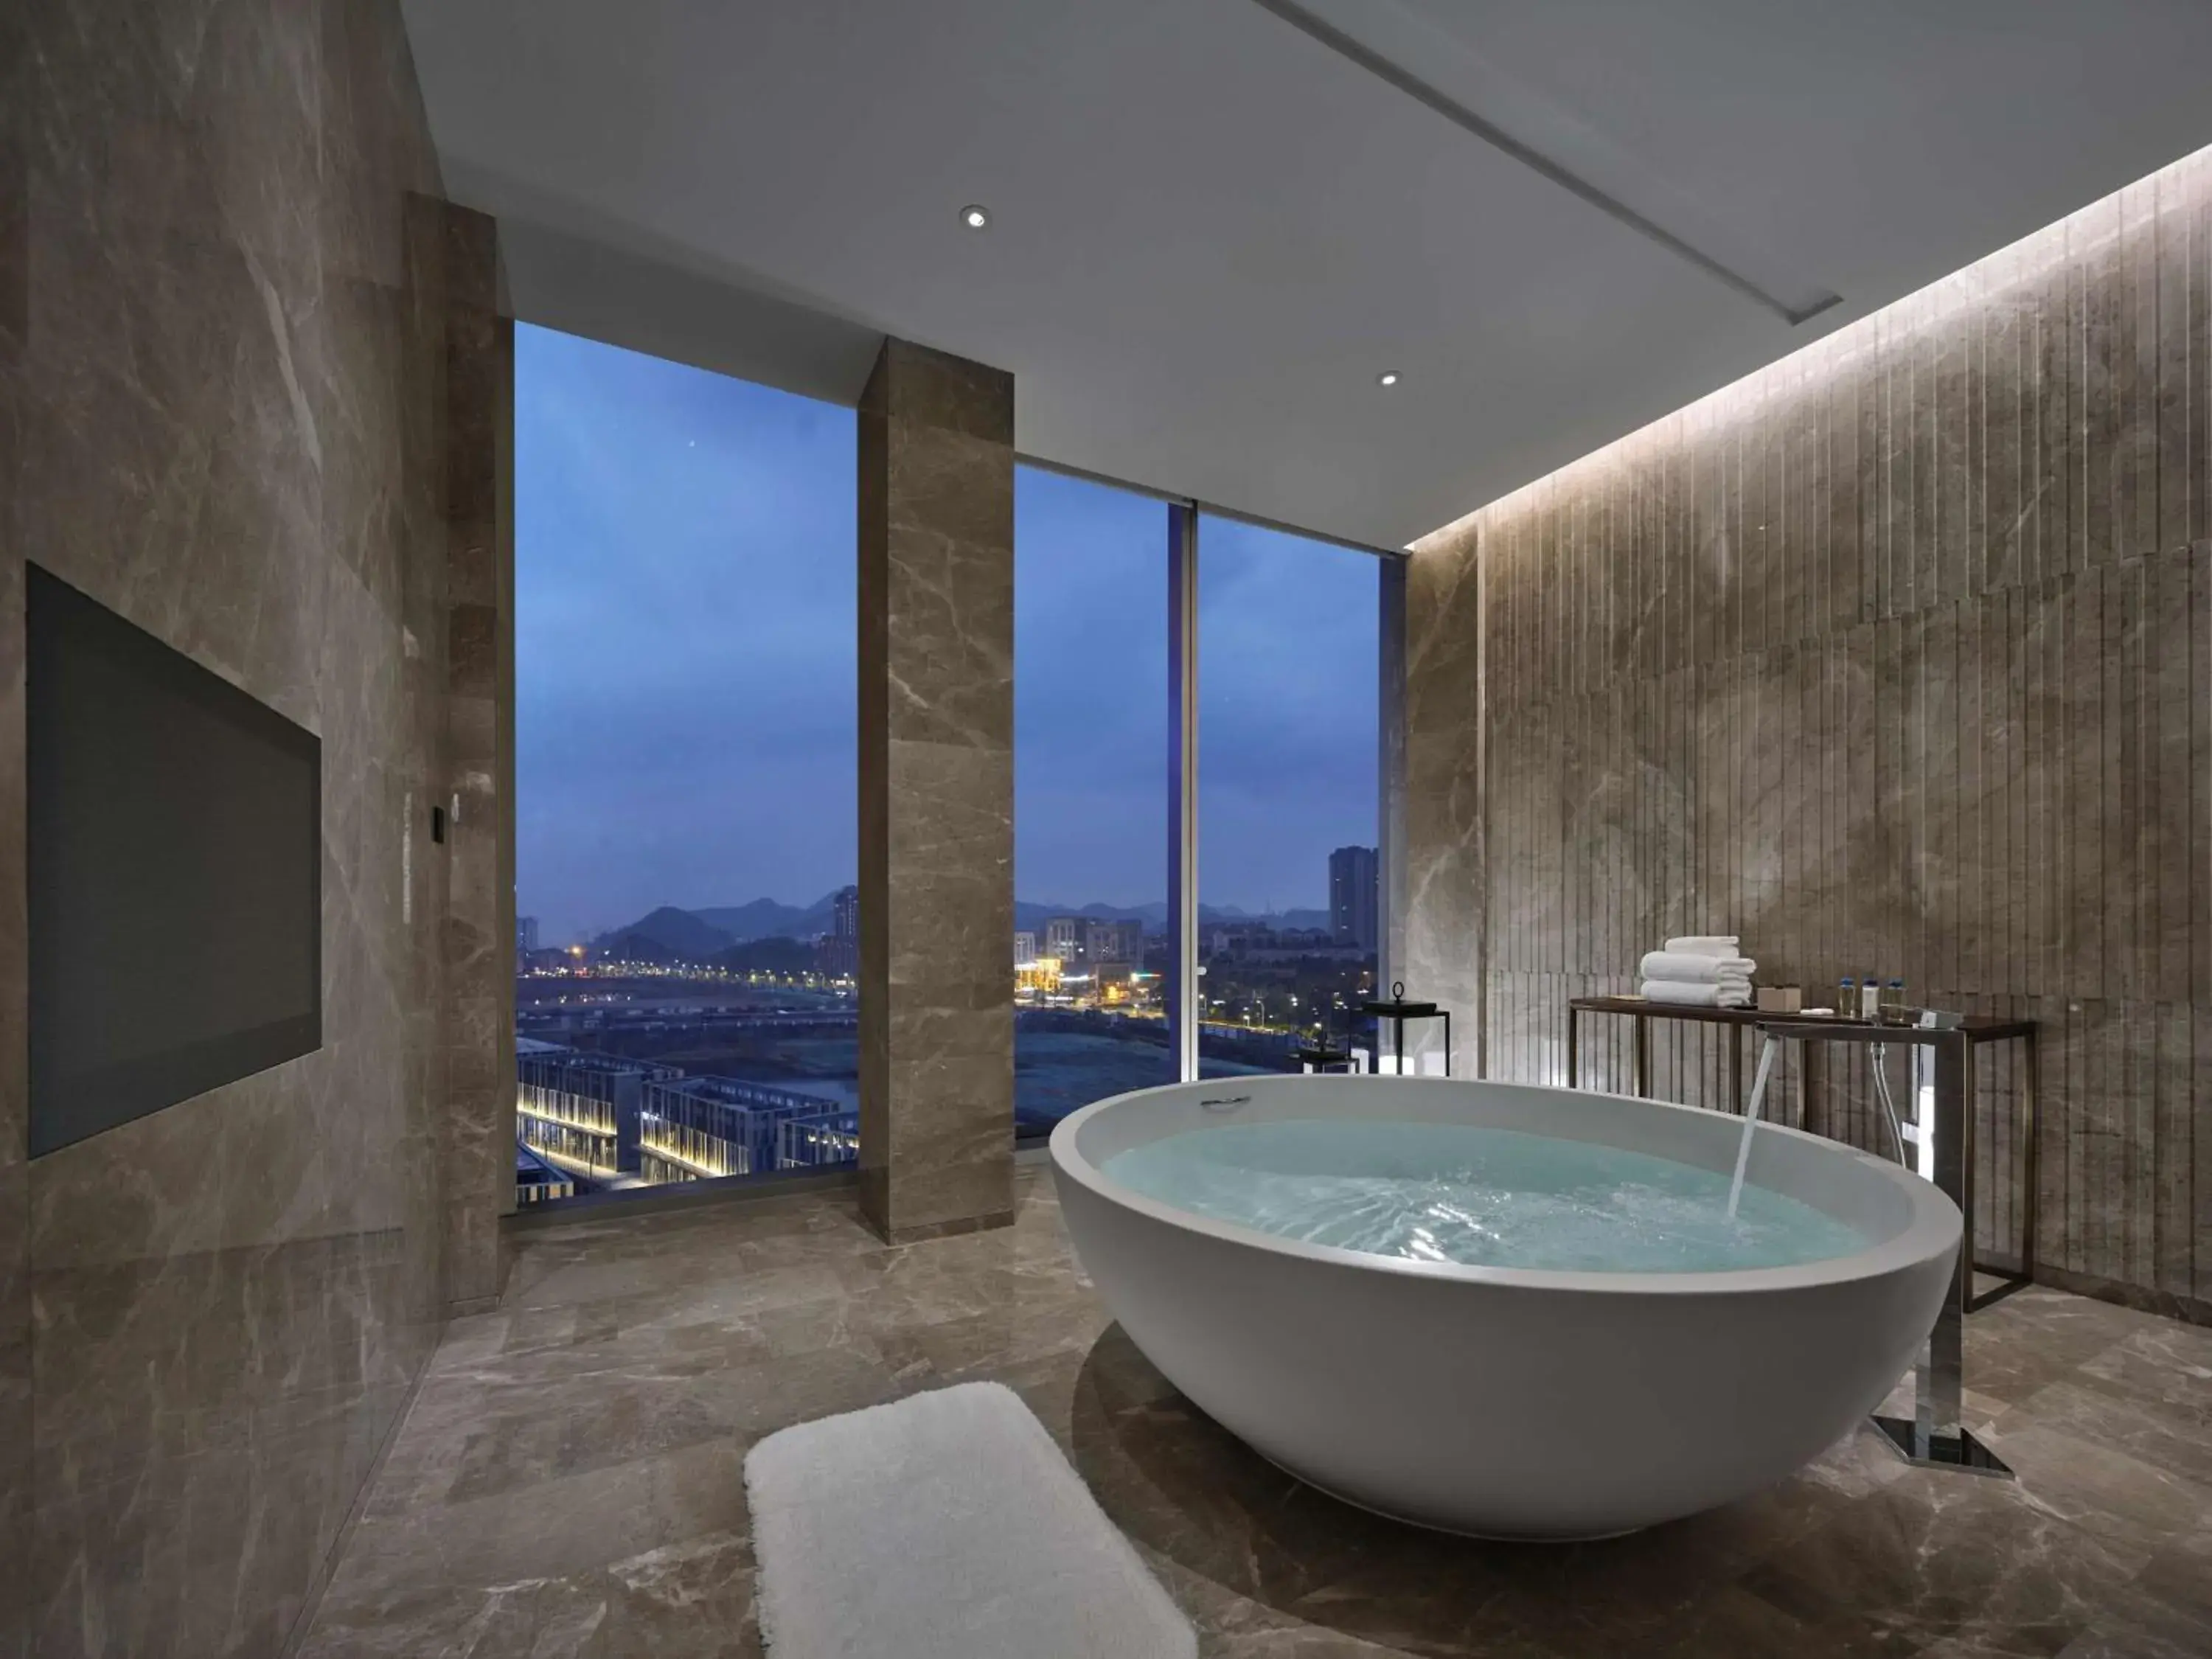 Bathroom in Hilton Guiyang